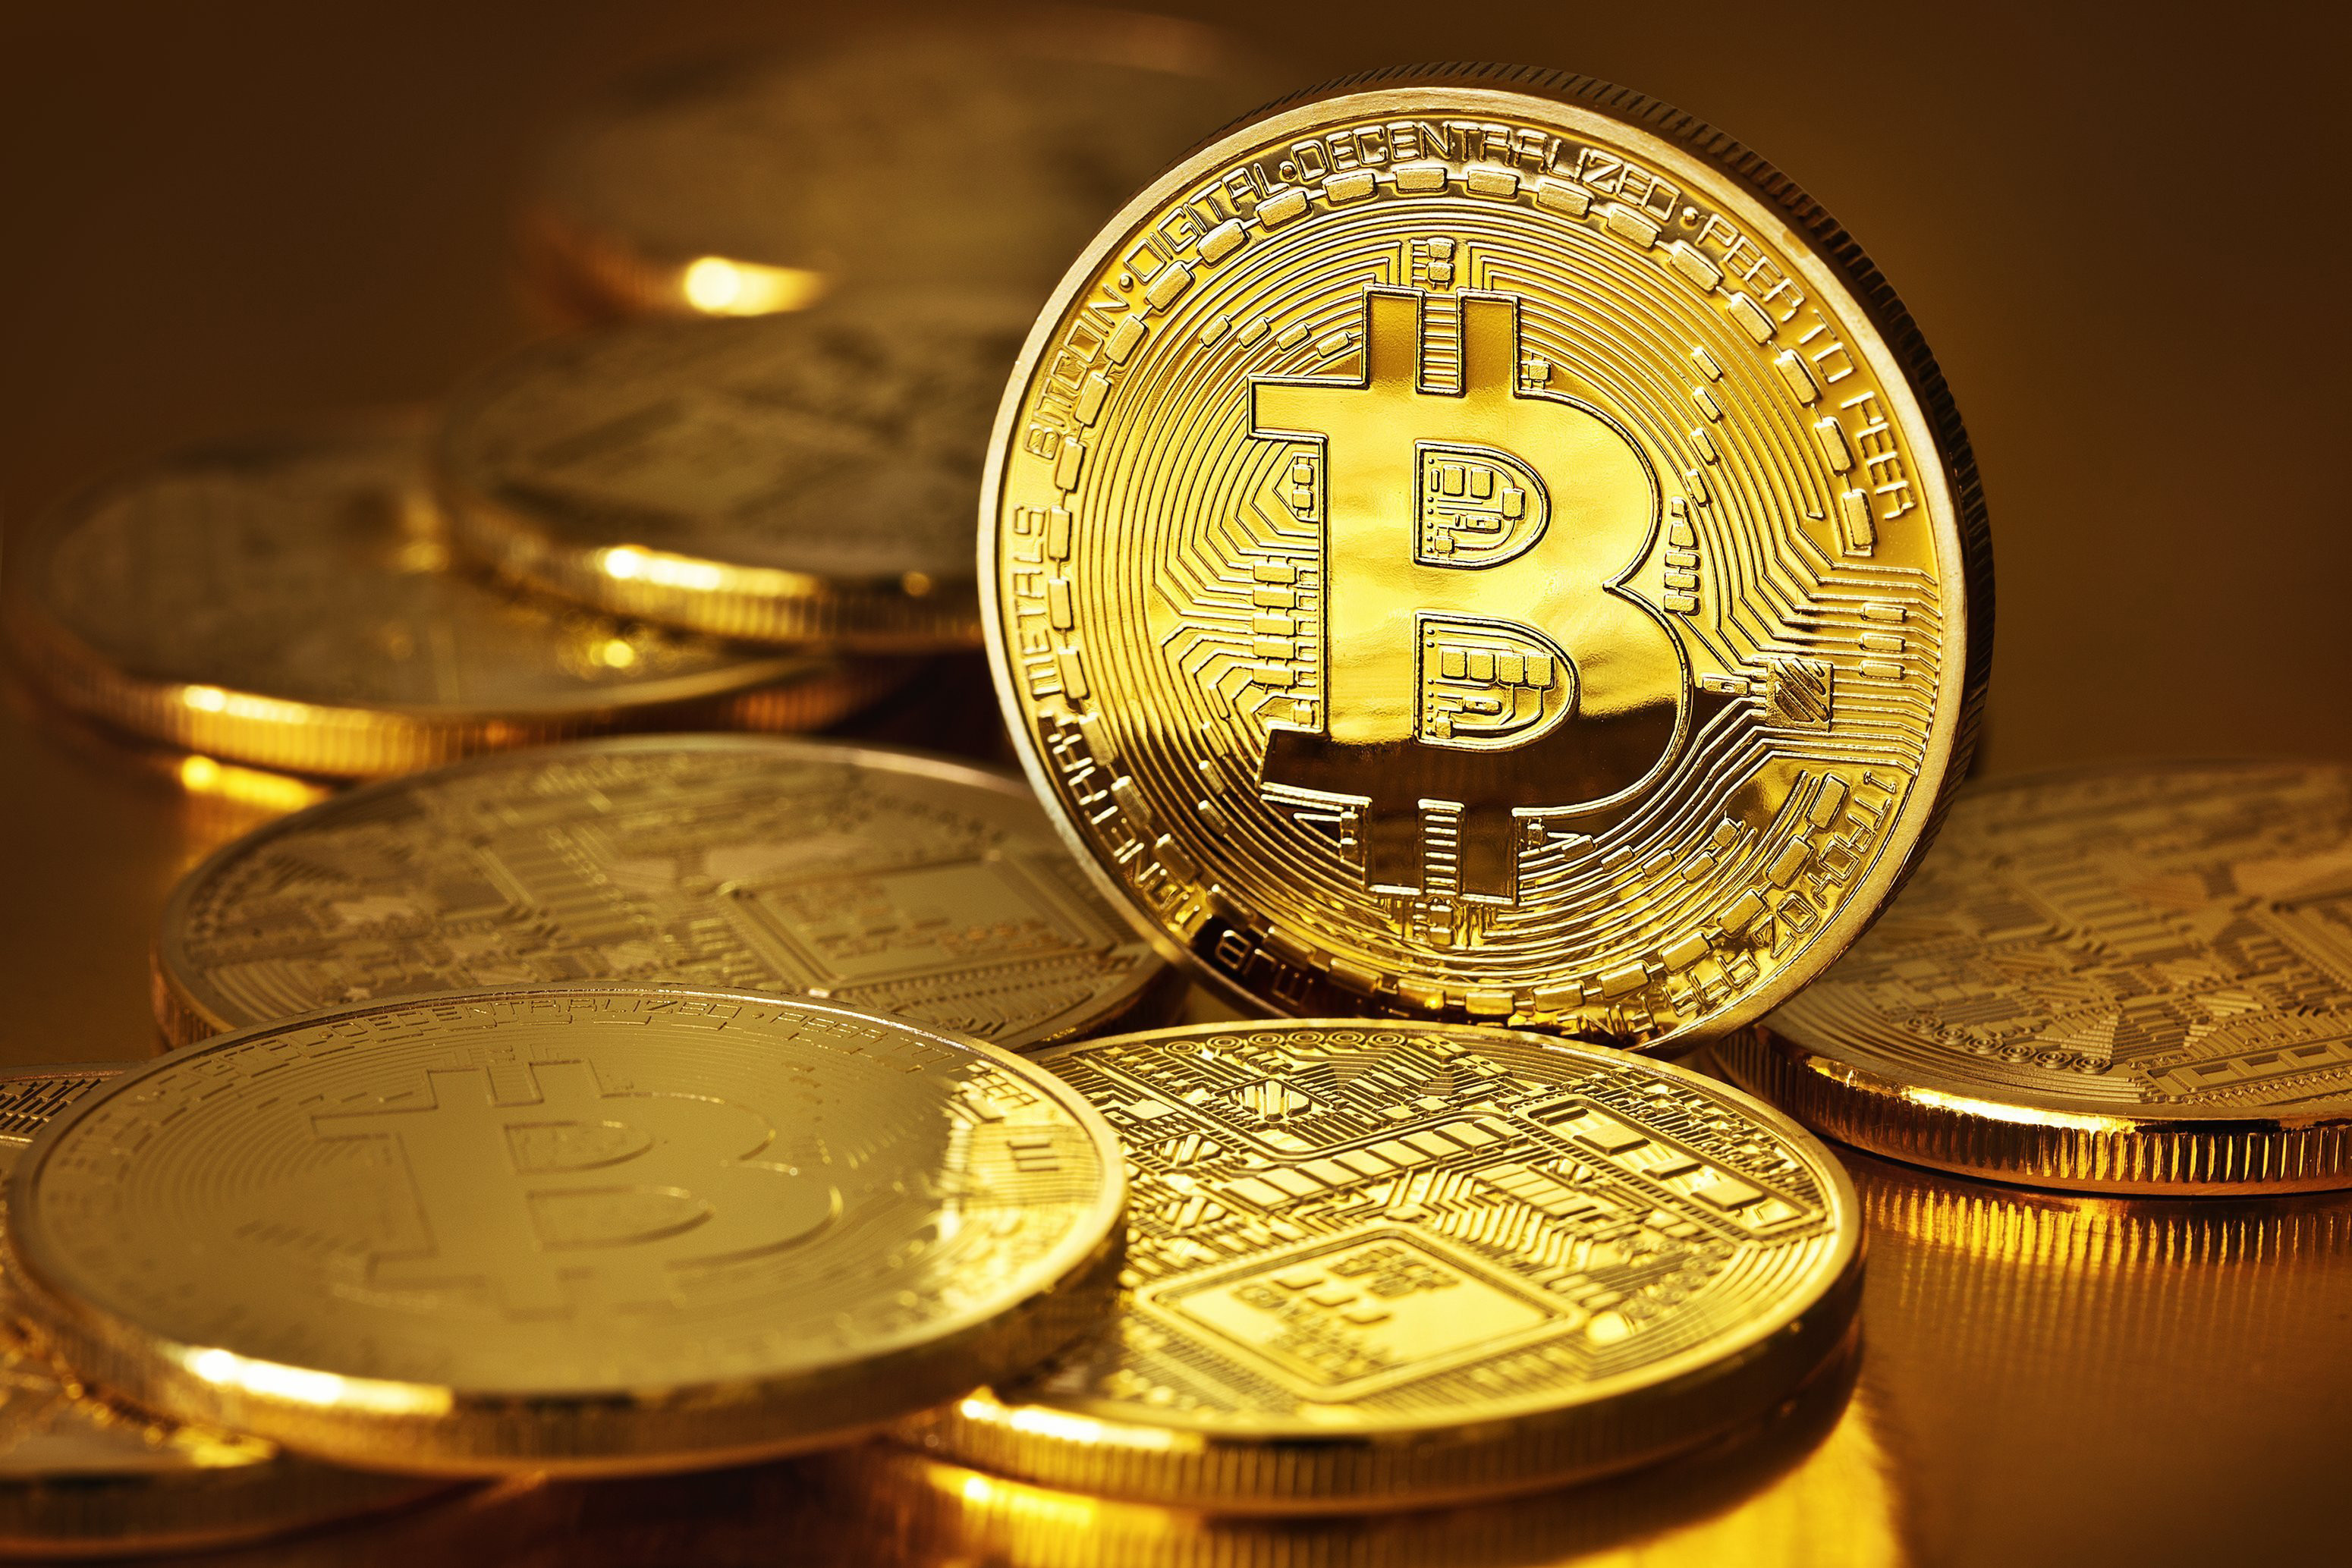 Giá bitcoin hôm nay 11/11: Tỷ giá bitcoin hiện nay mất mốc 7.000 USD